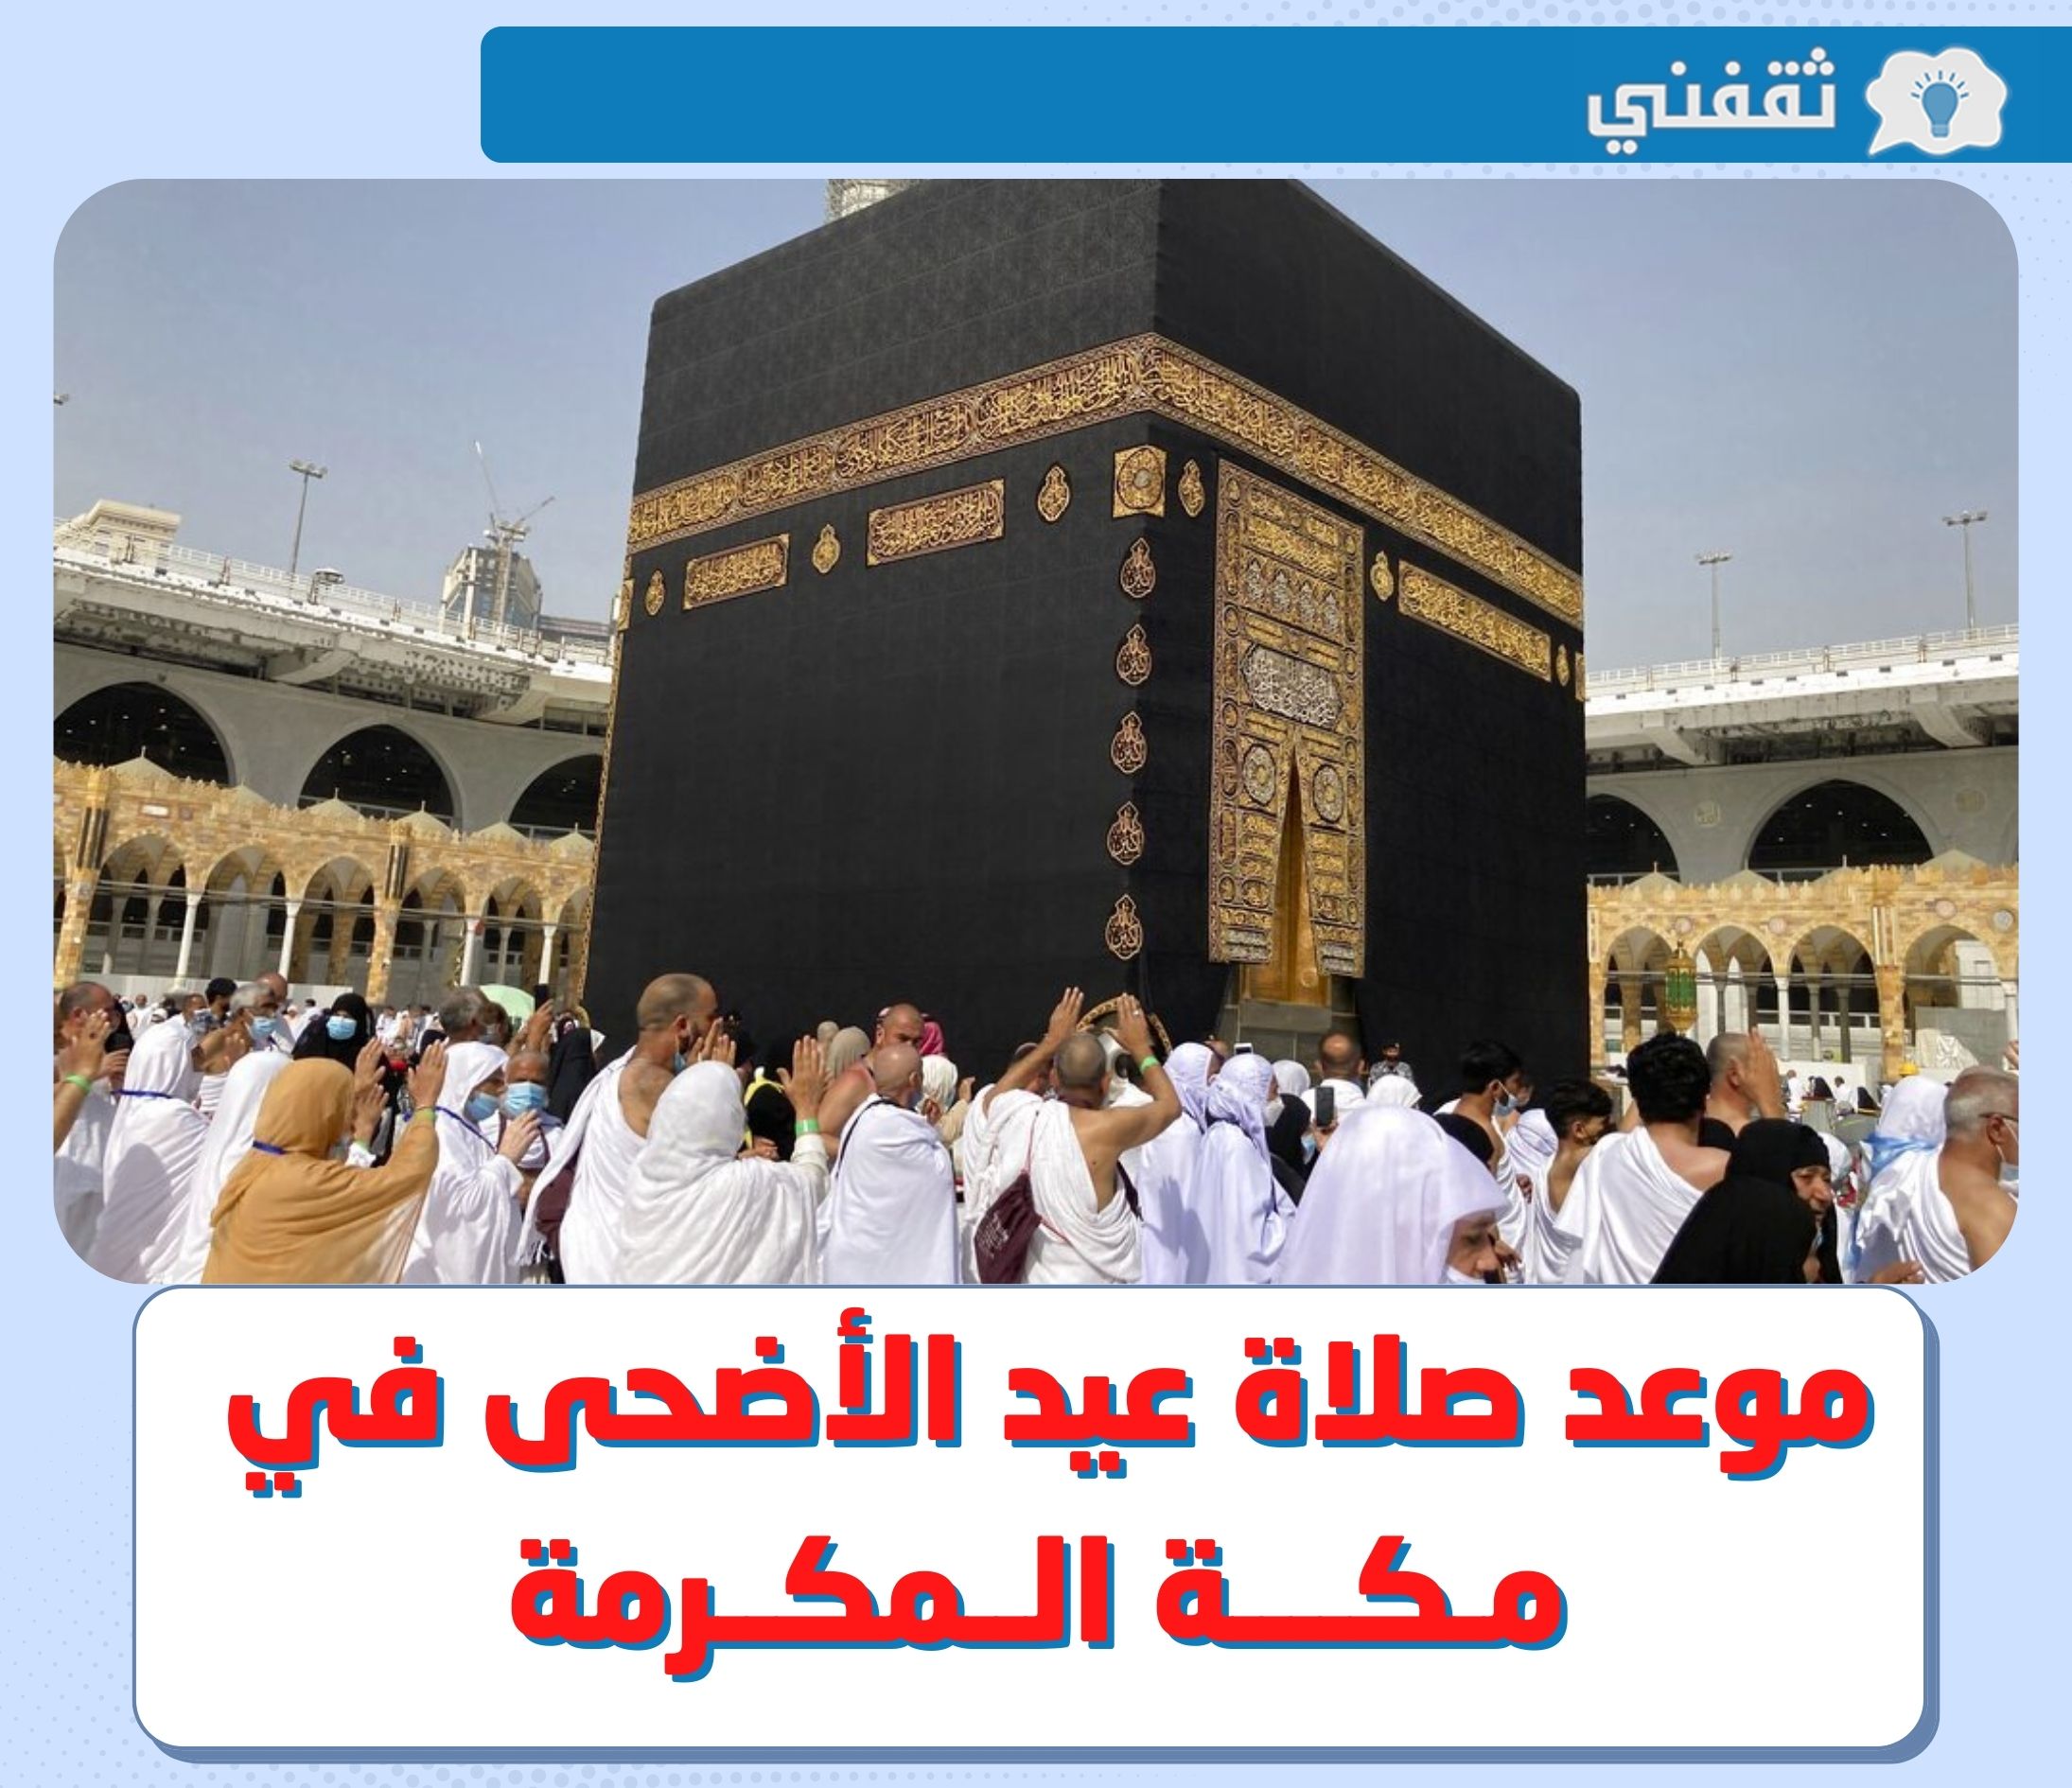 وقت صلاة العيد في مكة || متى توقيت موعد صلاة عيد الأضحى 2022 - 1443 في مكة المكرمة ؟